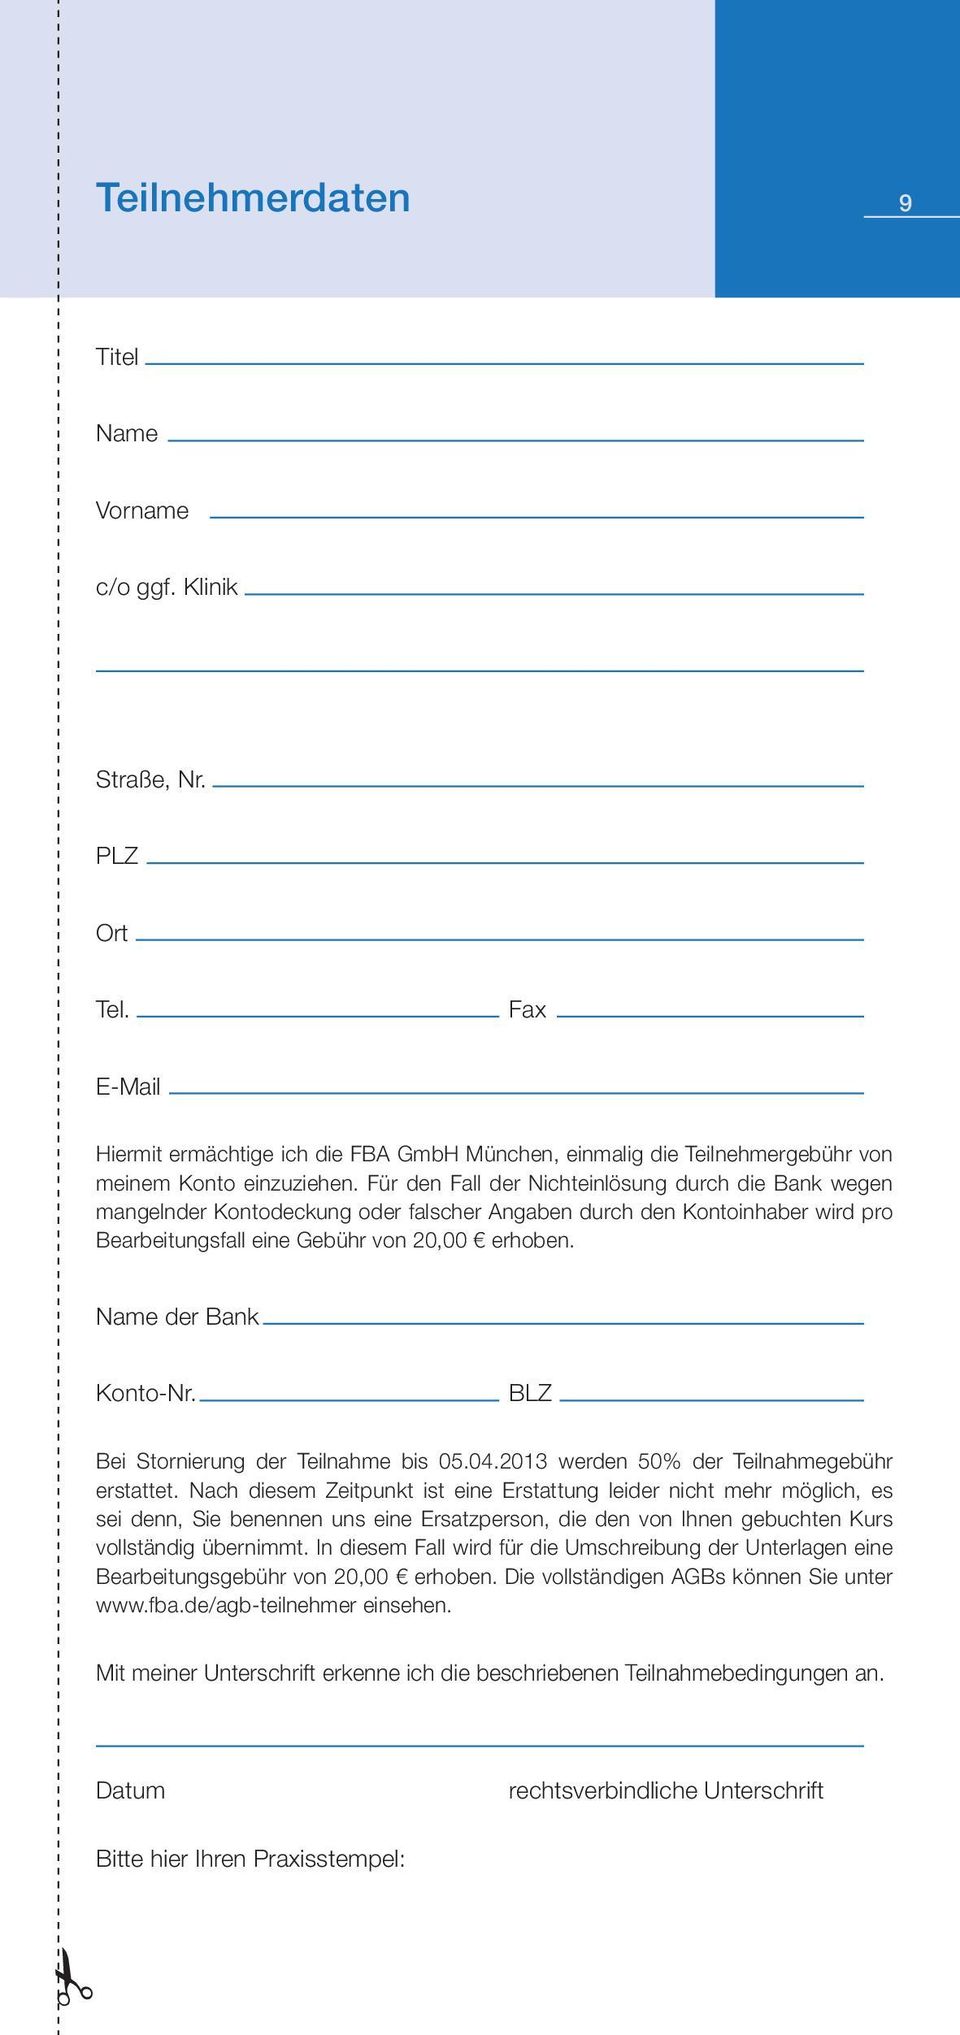 Name der Bank Konto-Nr. BLZ Bei Stornierung der Teilnahme bis 05.04.2013 werden 50% der Teilnahmegebühr erstattet.